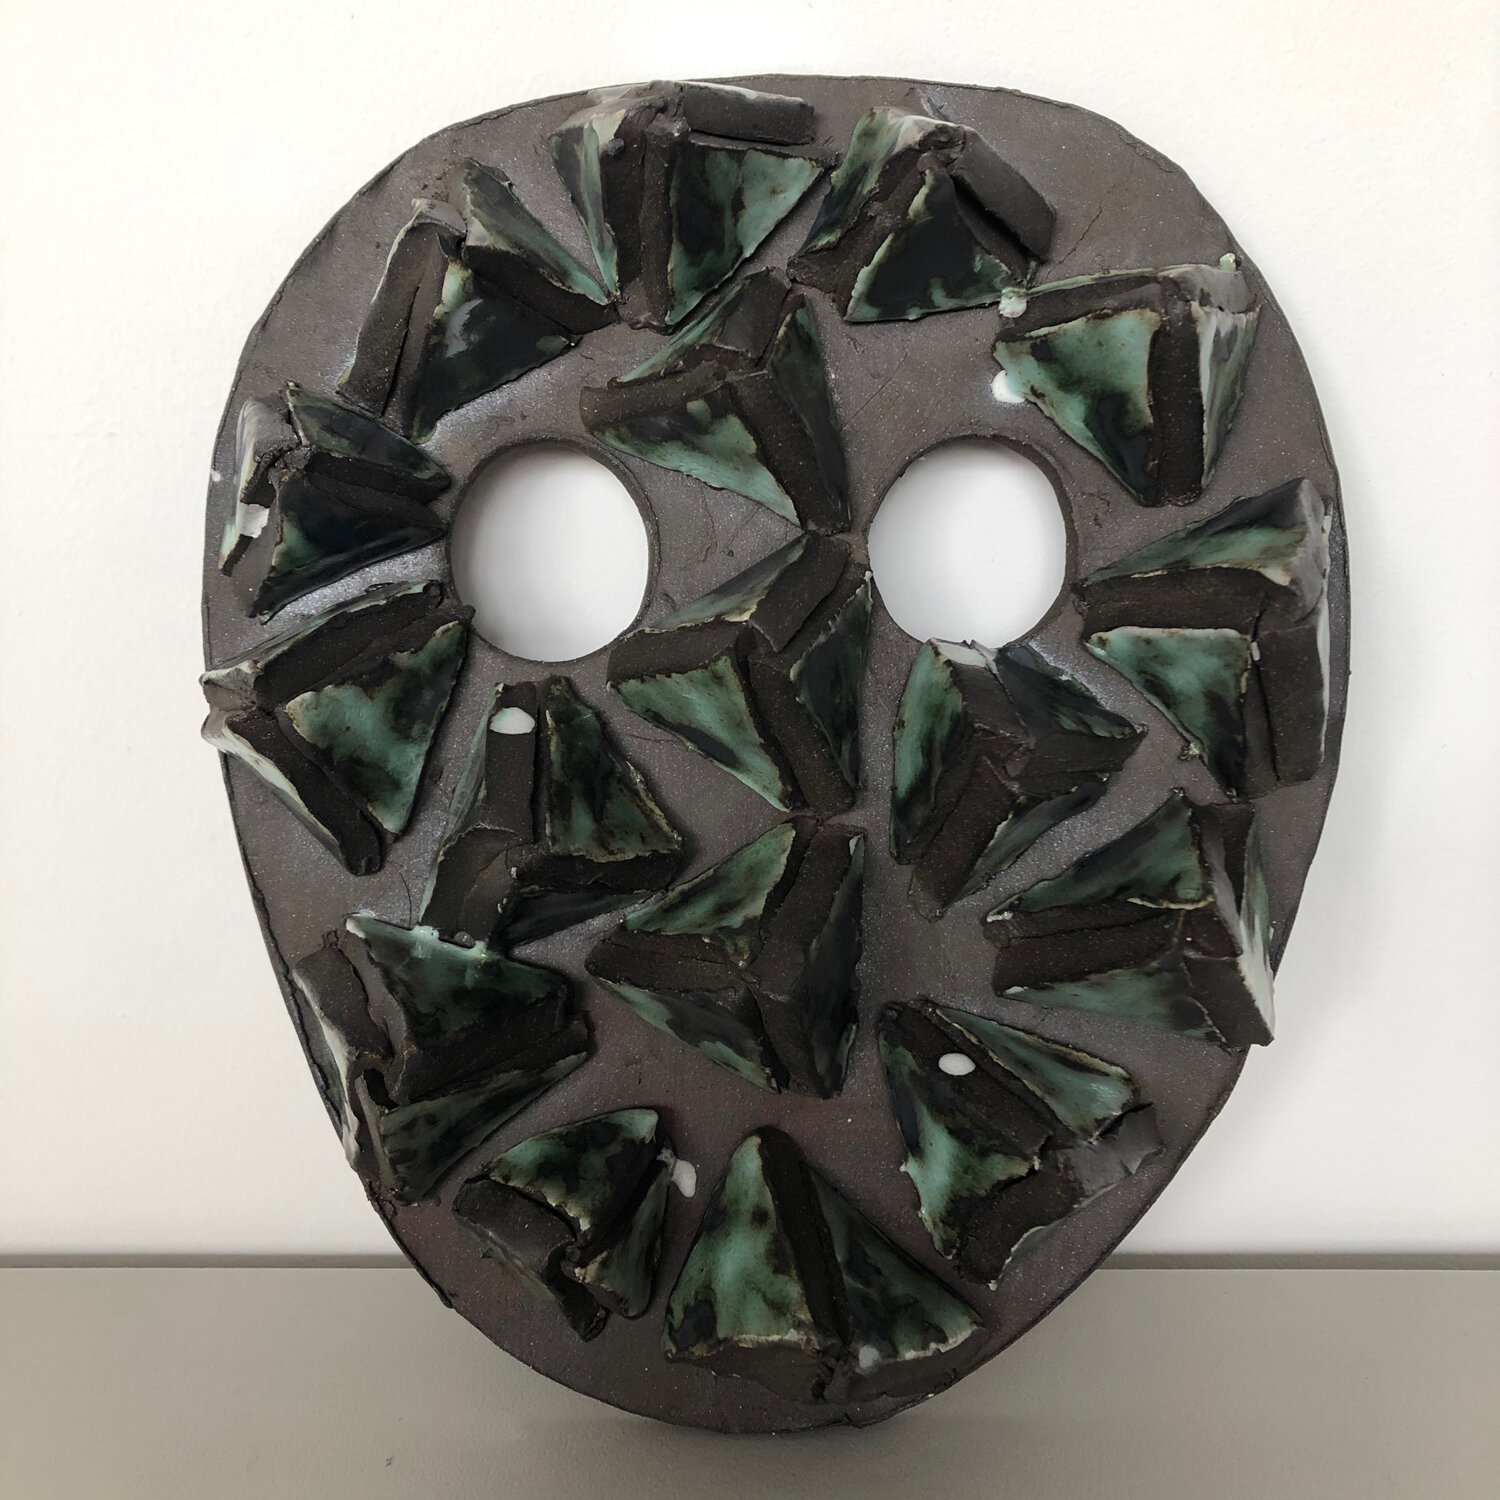 Mask, 2020, glazed ceramic, 9 1/2 x 8 1/4 x 2"